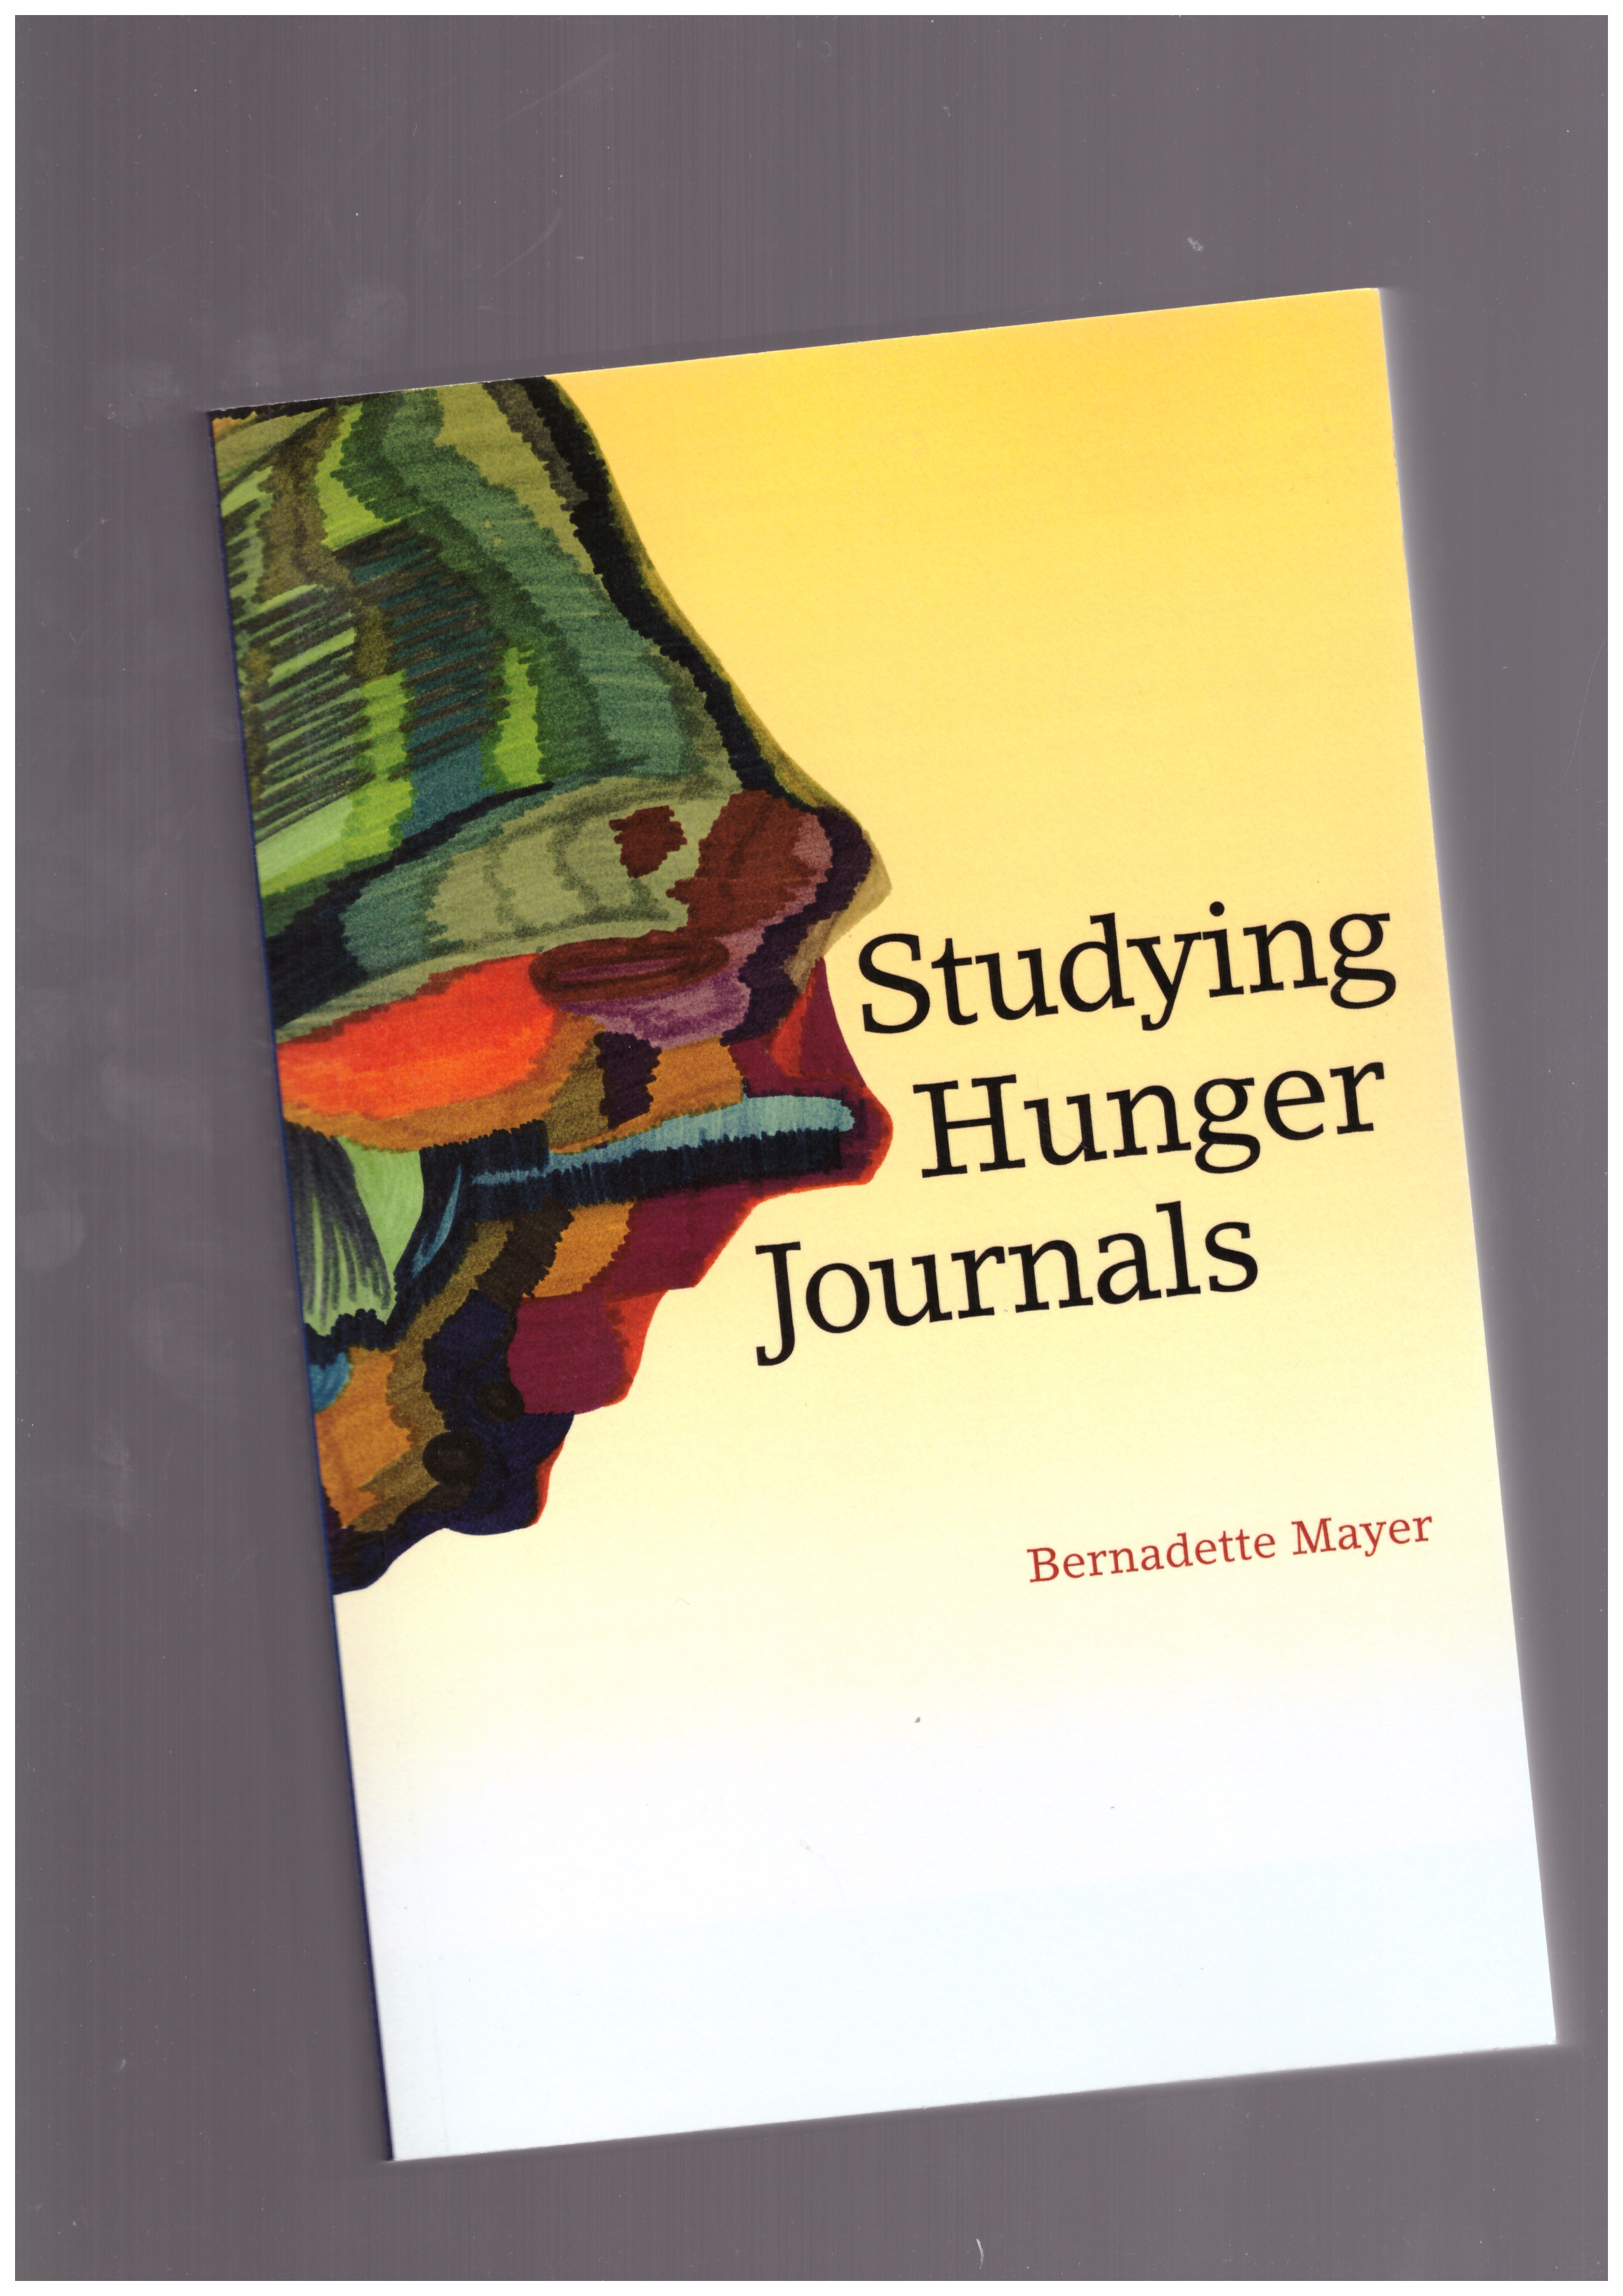 MAYER, Bernadette - Studying Hunger Journals